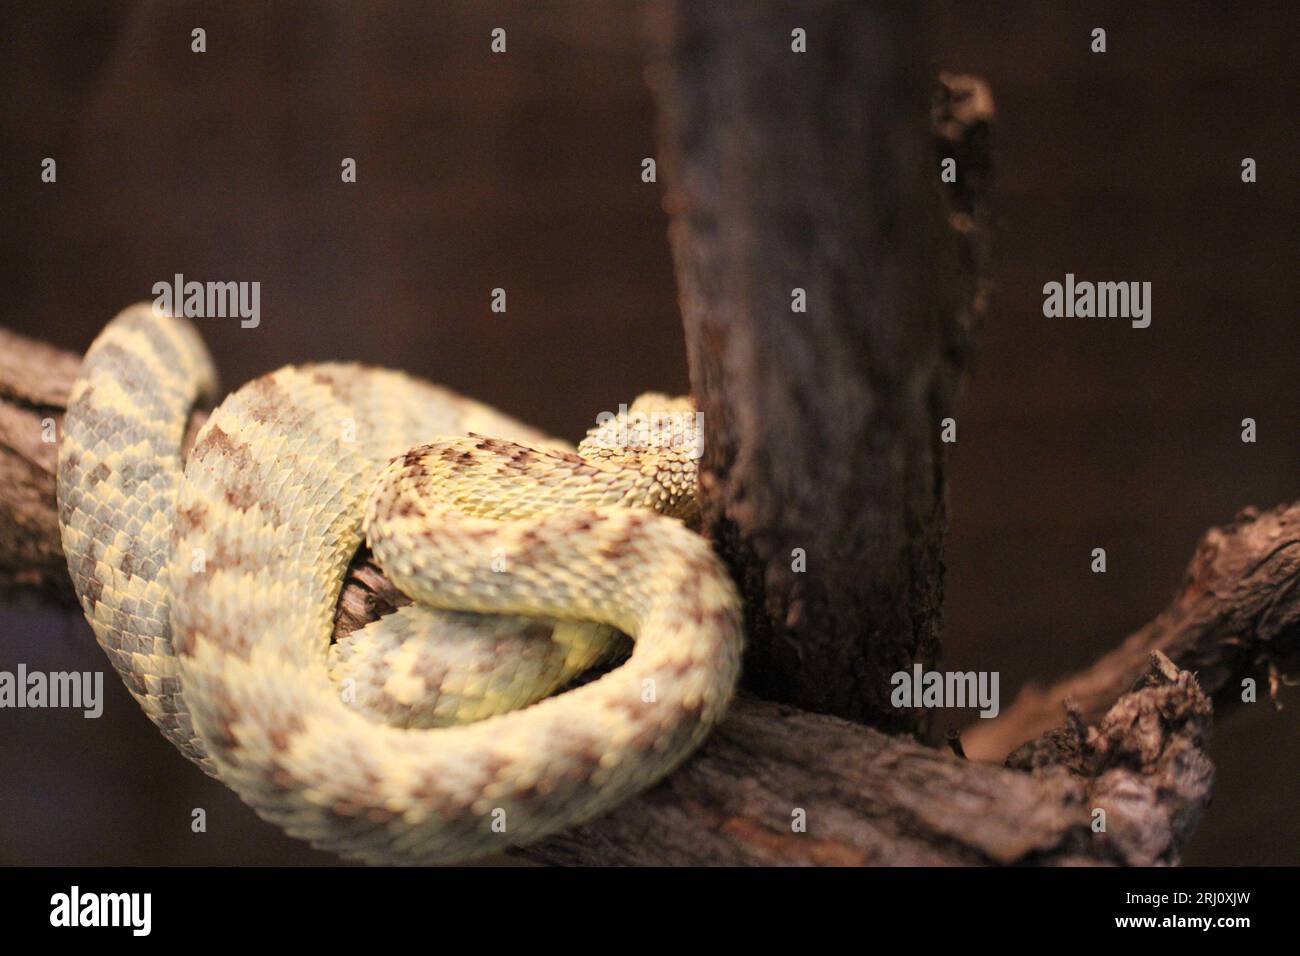 snake in terrarium resting Stock Photo